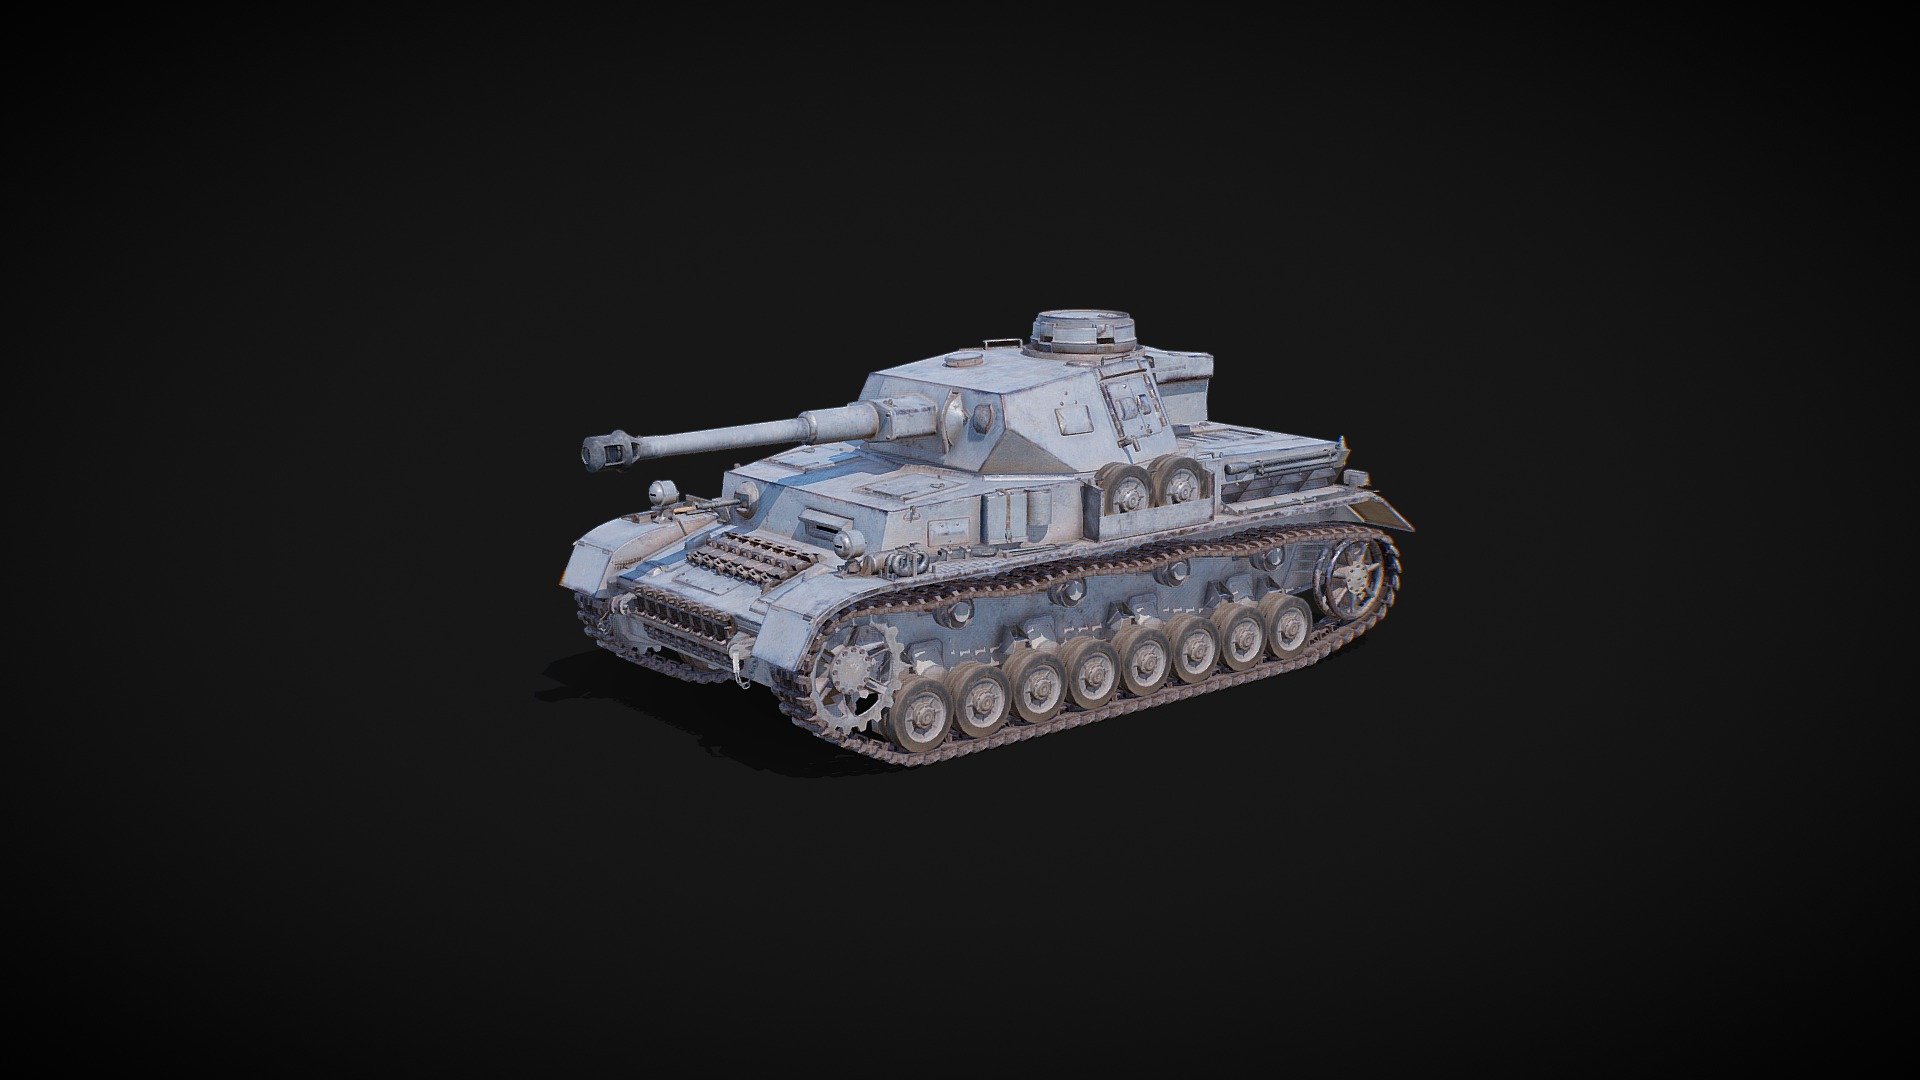 Panzer IV, German medium tank